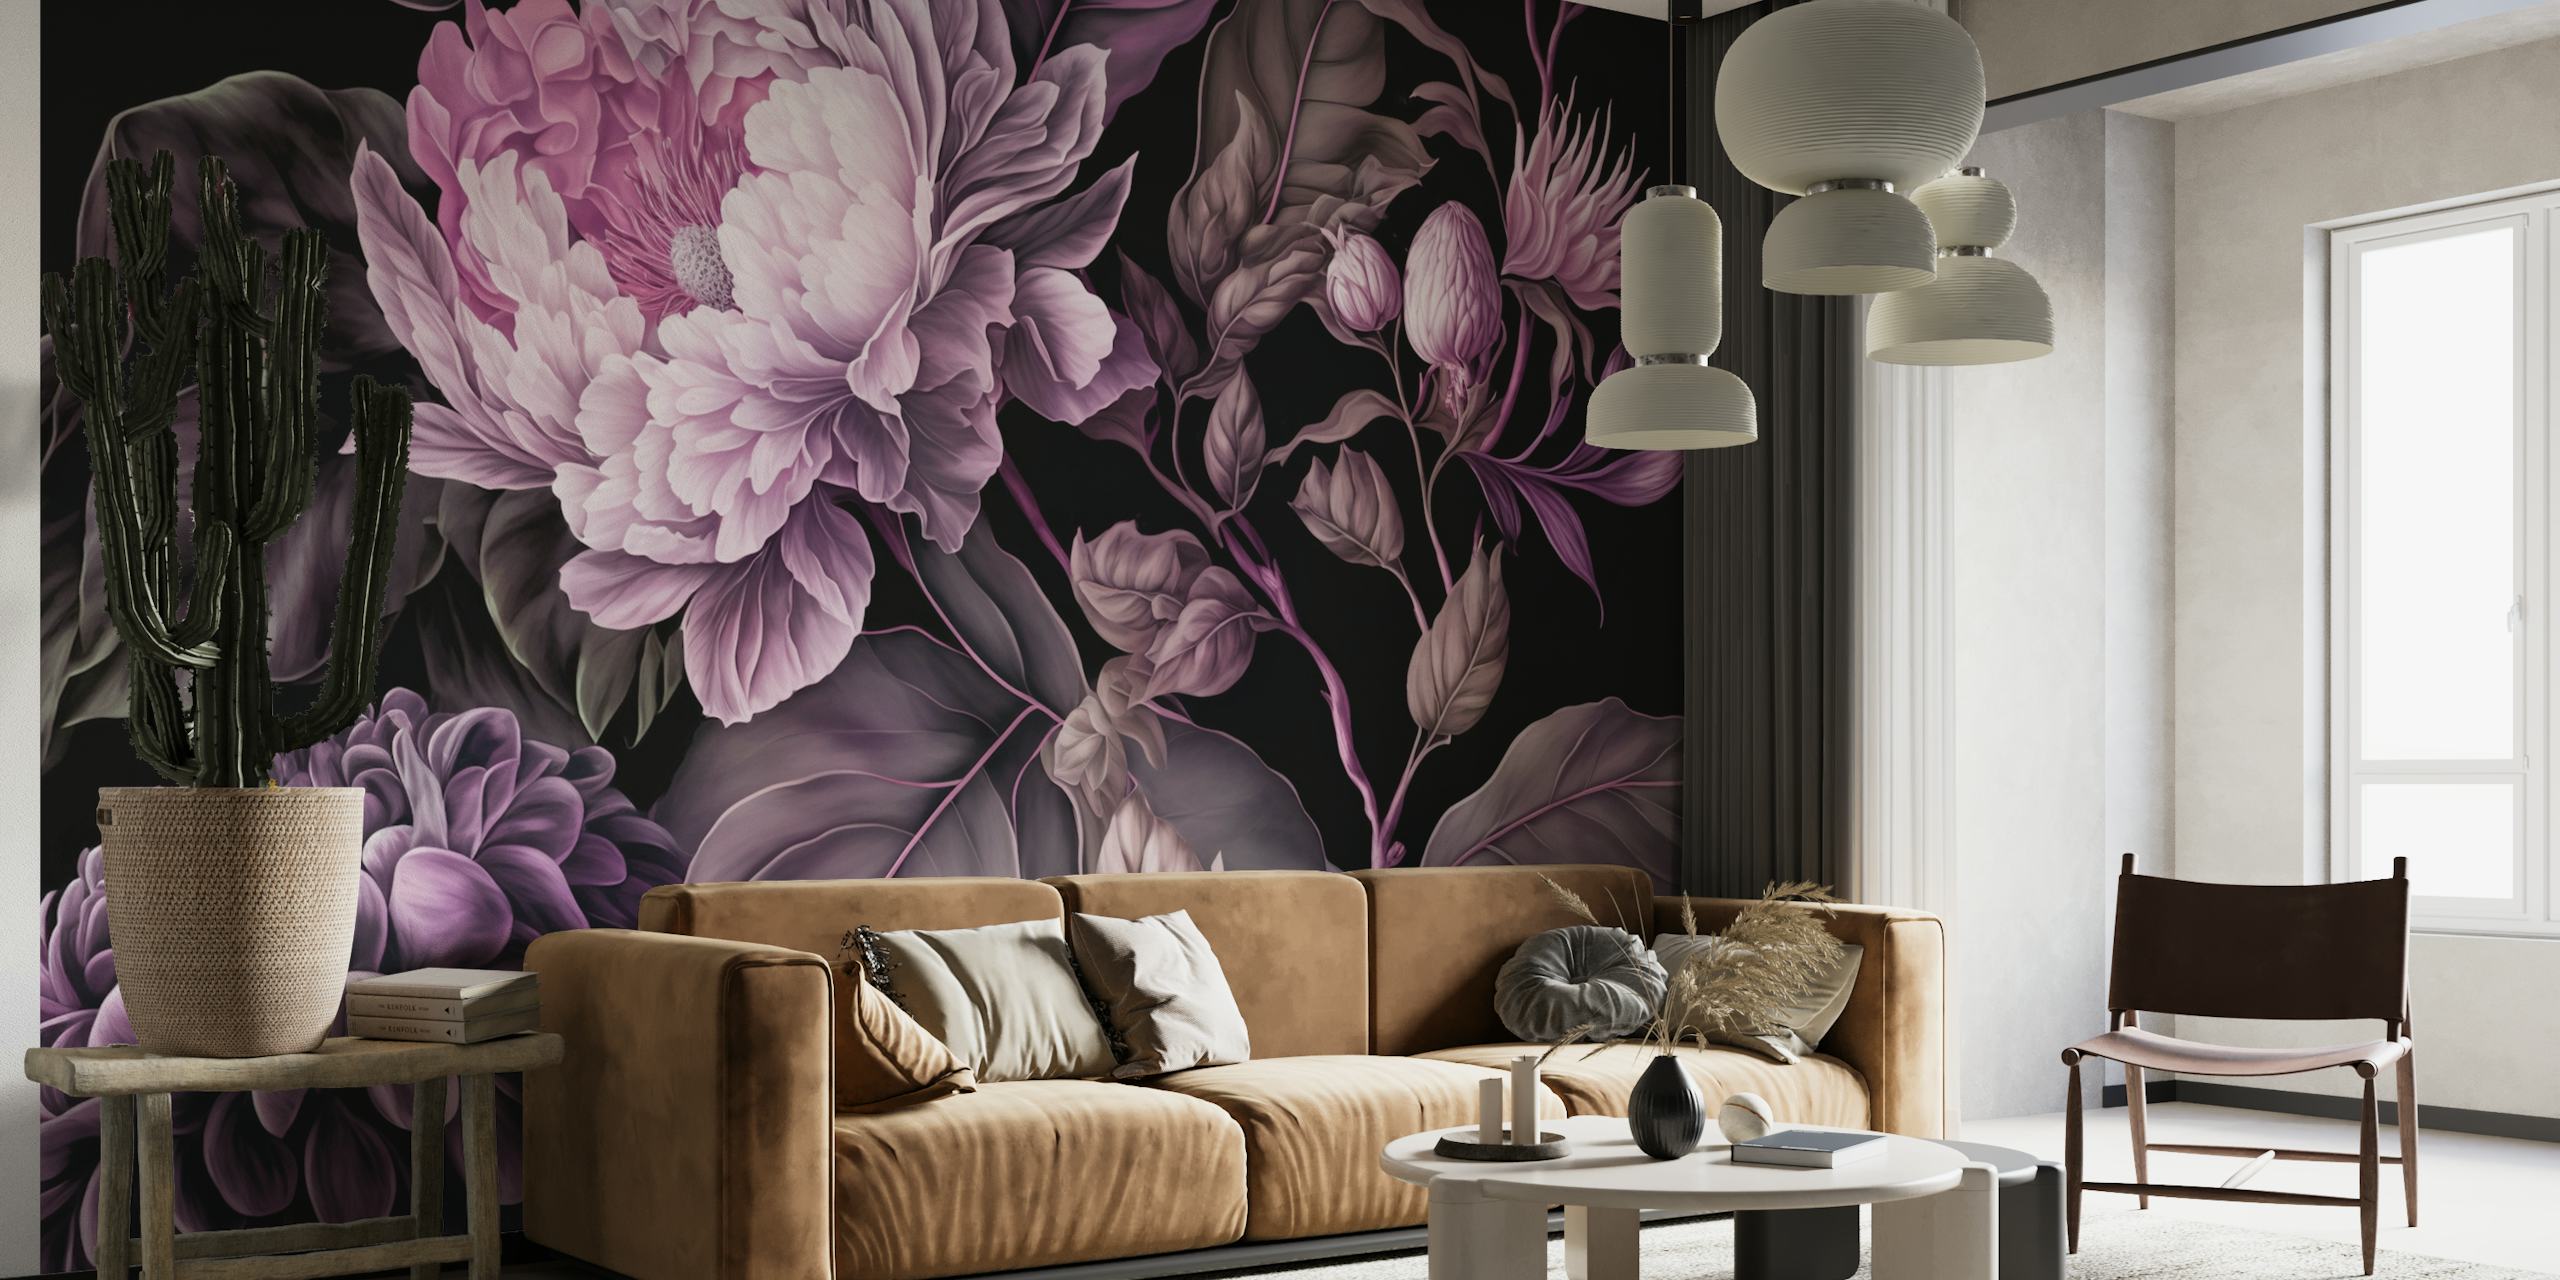 Opulentes, stimmungsvolles Wandbild mit großem Blumenmuster im Barockstil für eine effektvolle Inneneinrichtung.